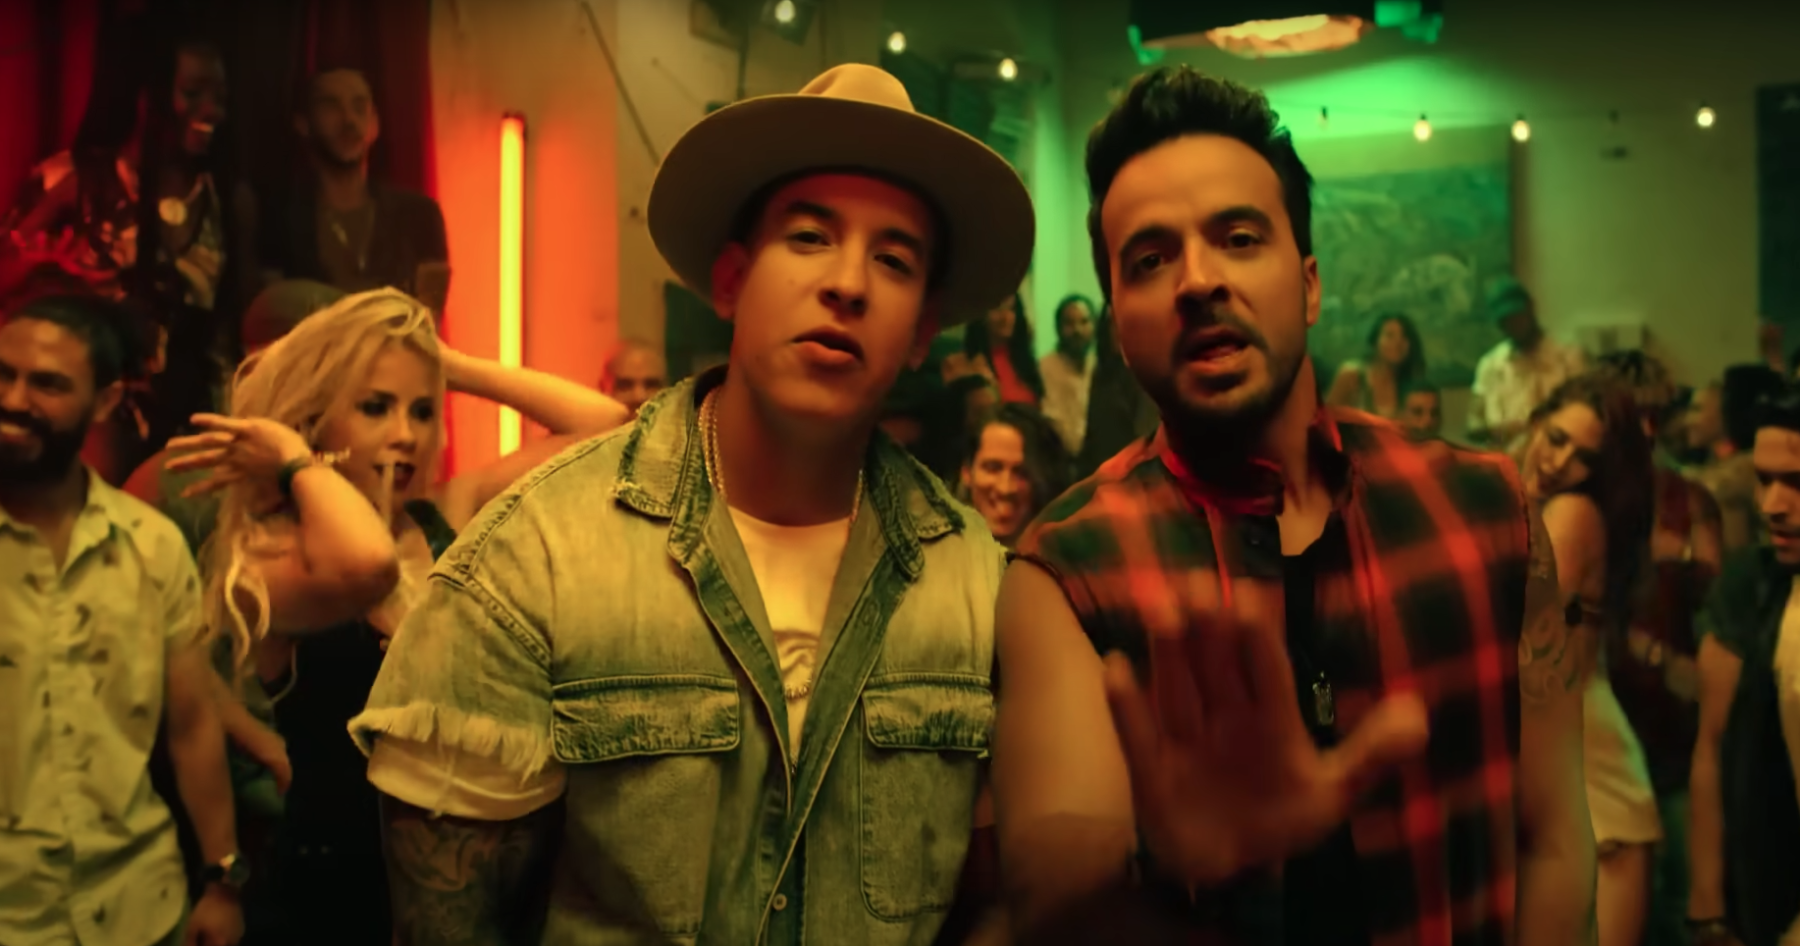 Daddy Yankee à gauche et Luis Fonsi à droite, extrait du clip vidéo du single Despacito